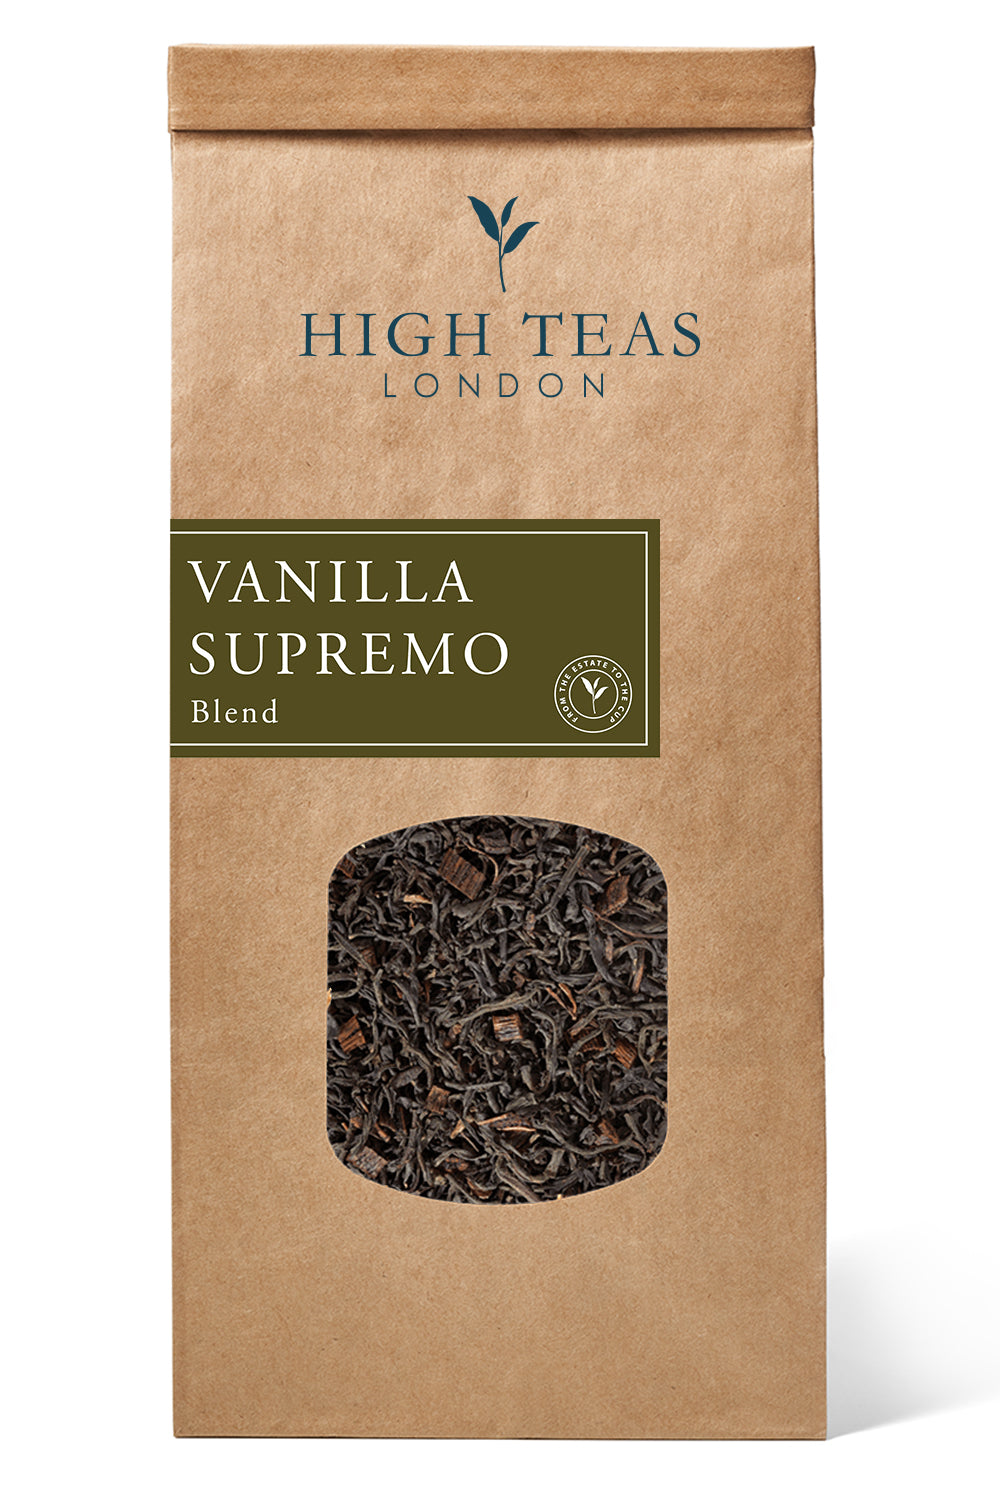 Vanilla Supremo-250g-Loose Leaf Tea-High Teas